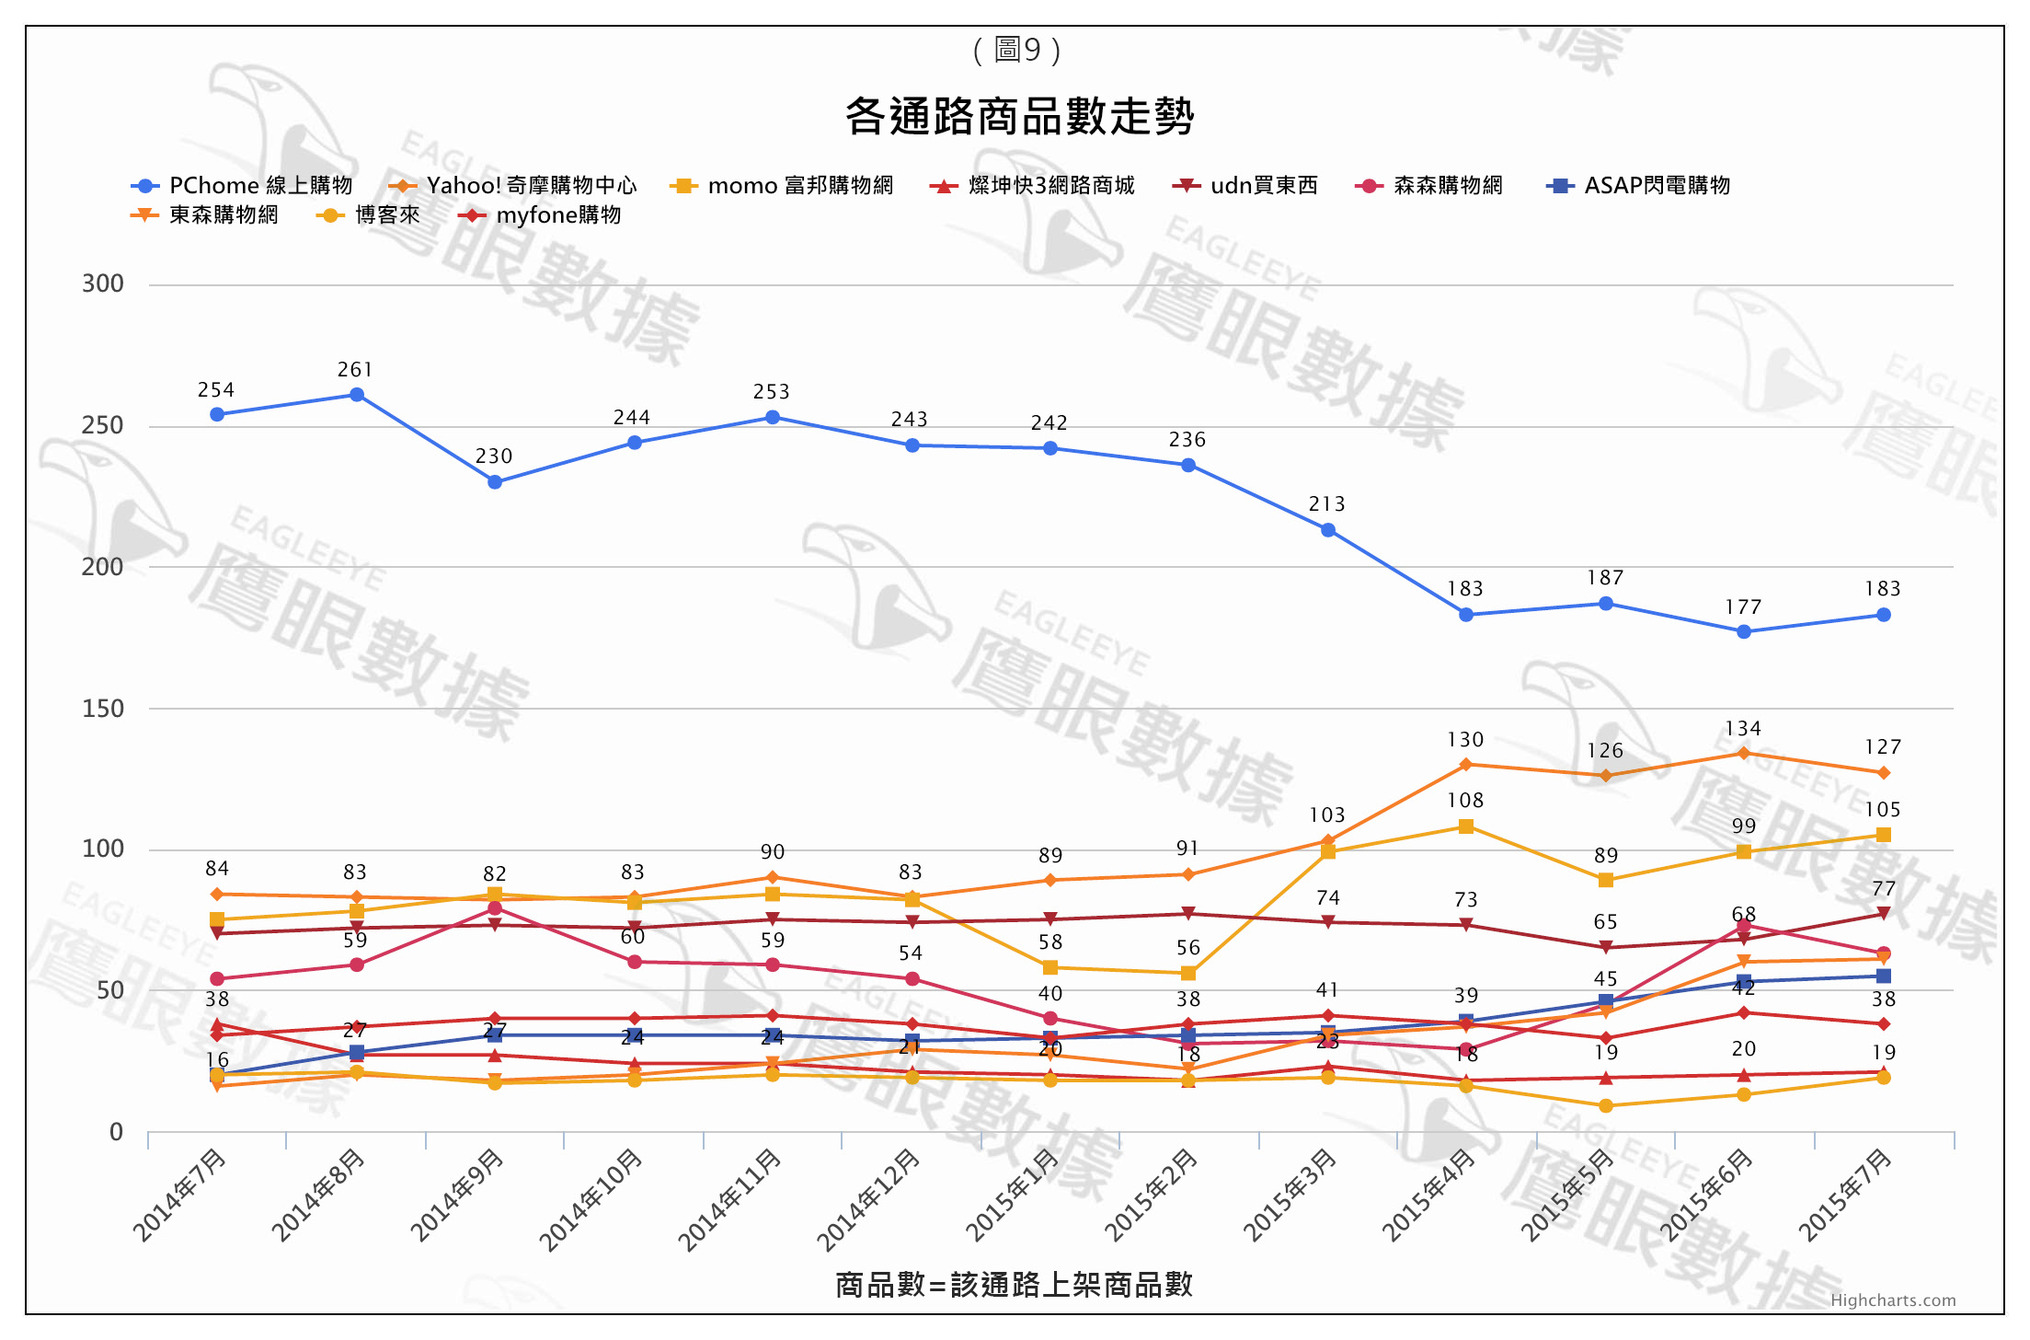 〈2015年7月〉台灣網路消費者對「電視盒」購買行為與通路品牌分析-EAGLEEYE鷹眼數據